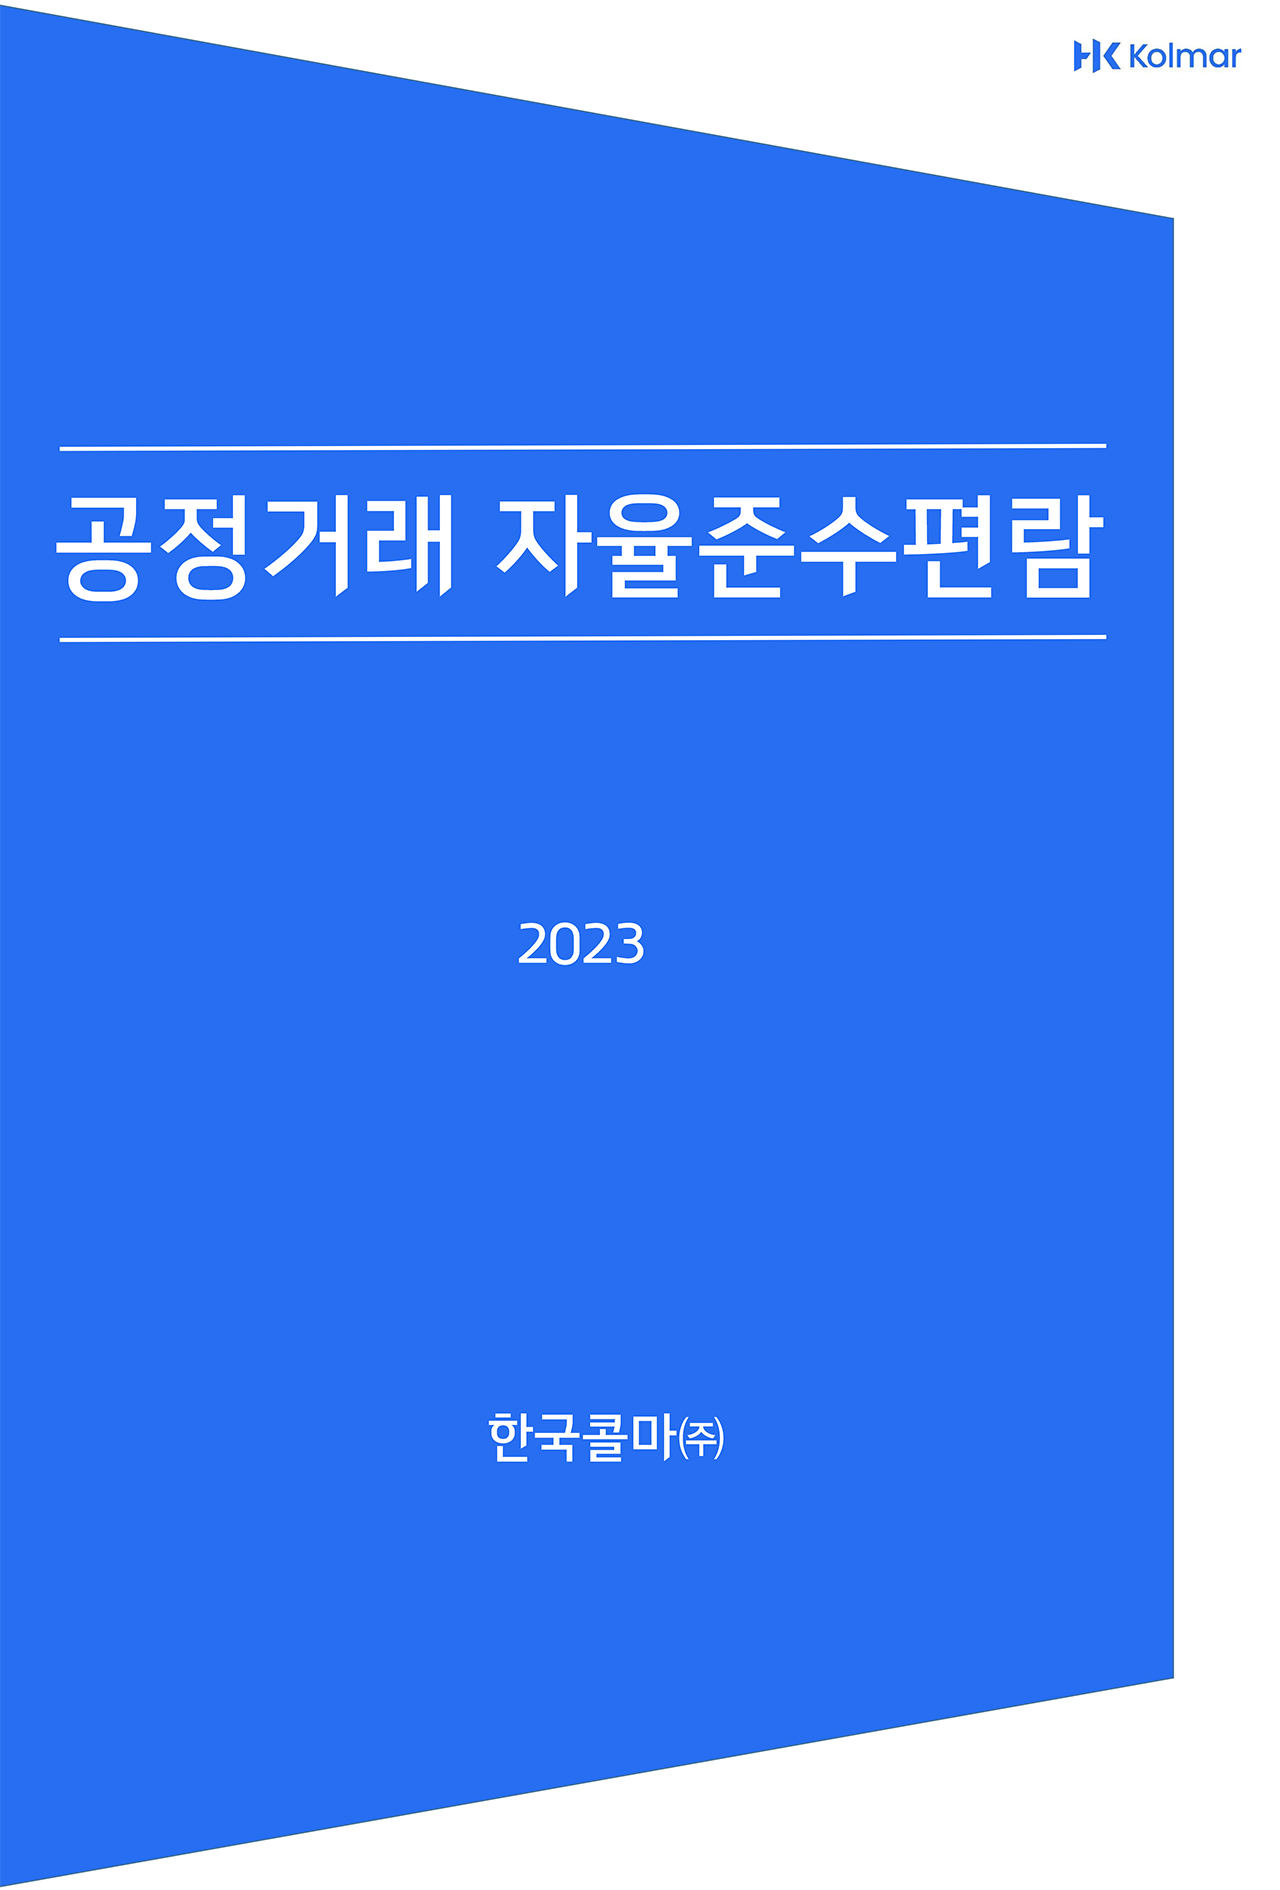 한국콜마 pdf 표지 이미지